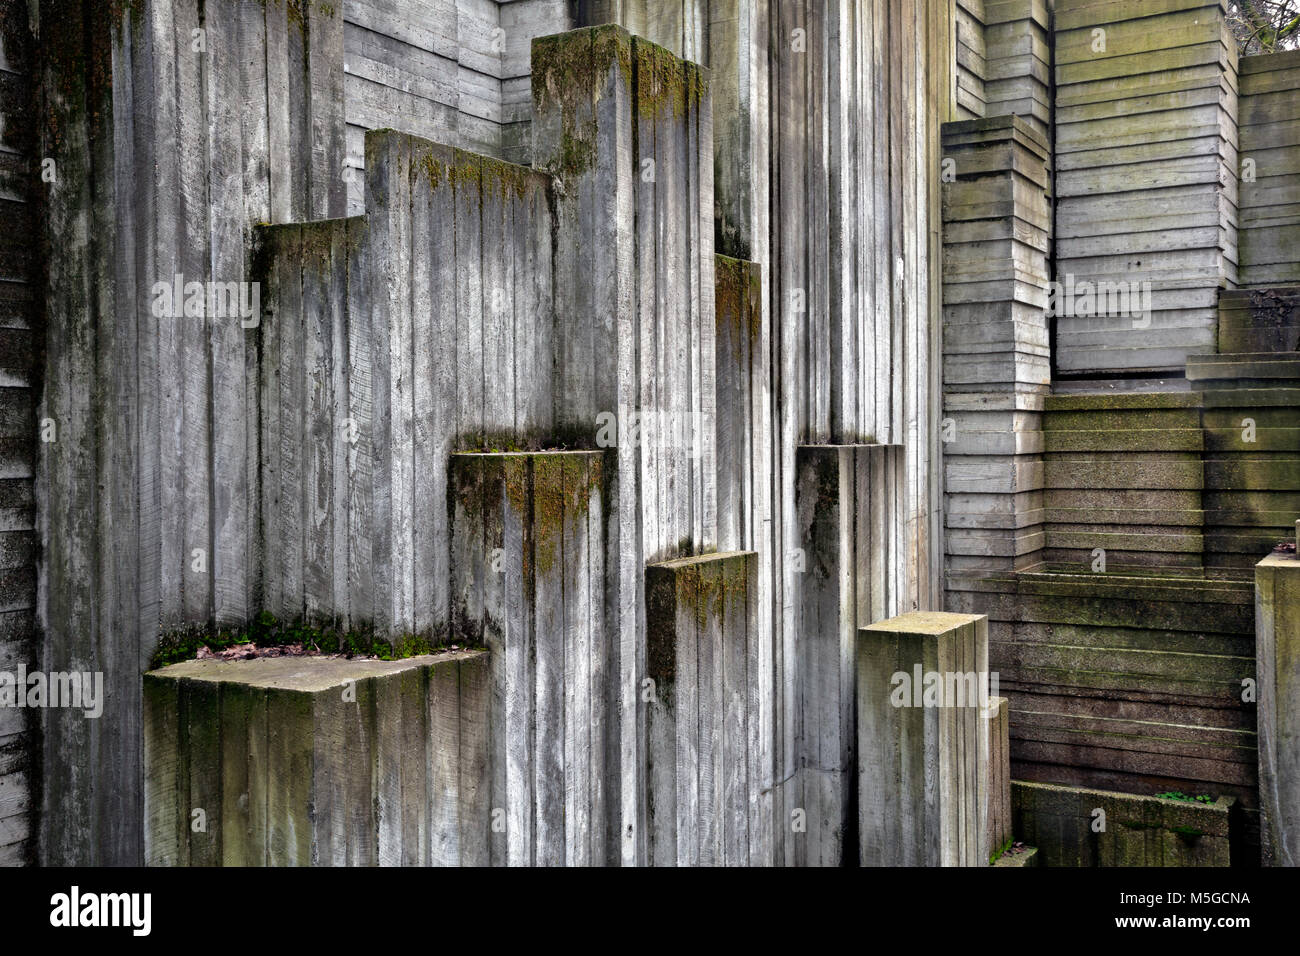 WASHINGTON - bloques de hormigón, con un montón de líneas y ángulos crear interesantes formas y texturas en el Cañón cascada área de Seattle. Foto de stock